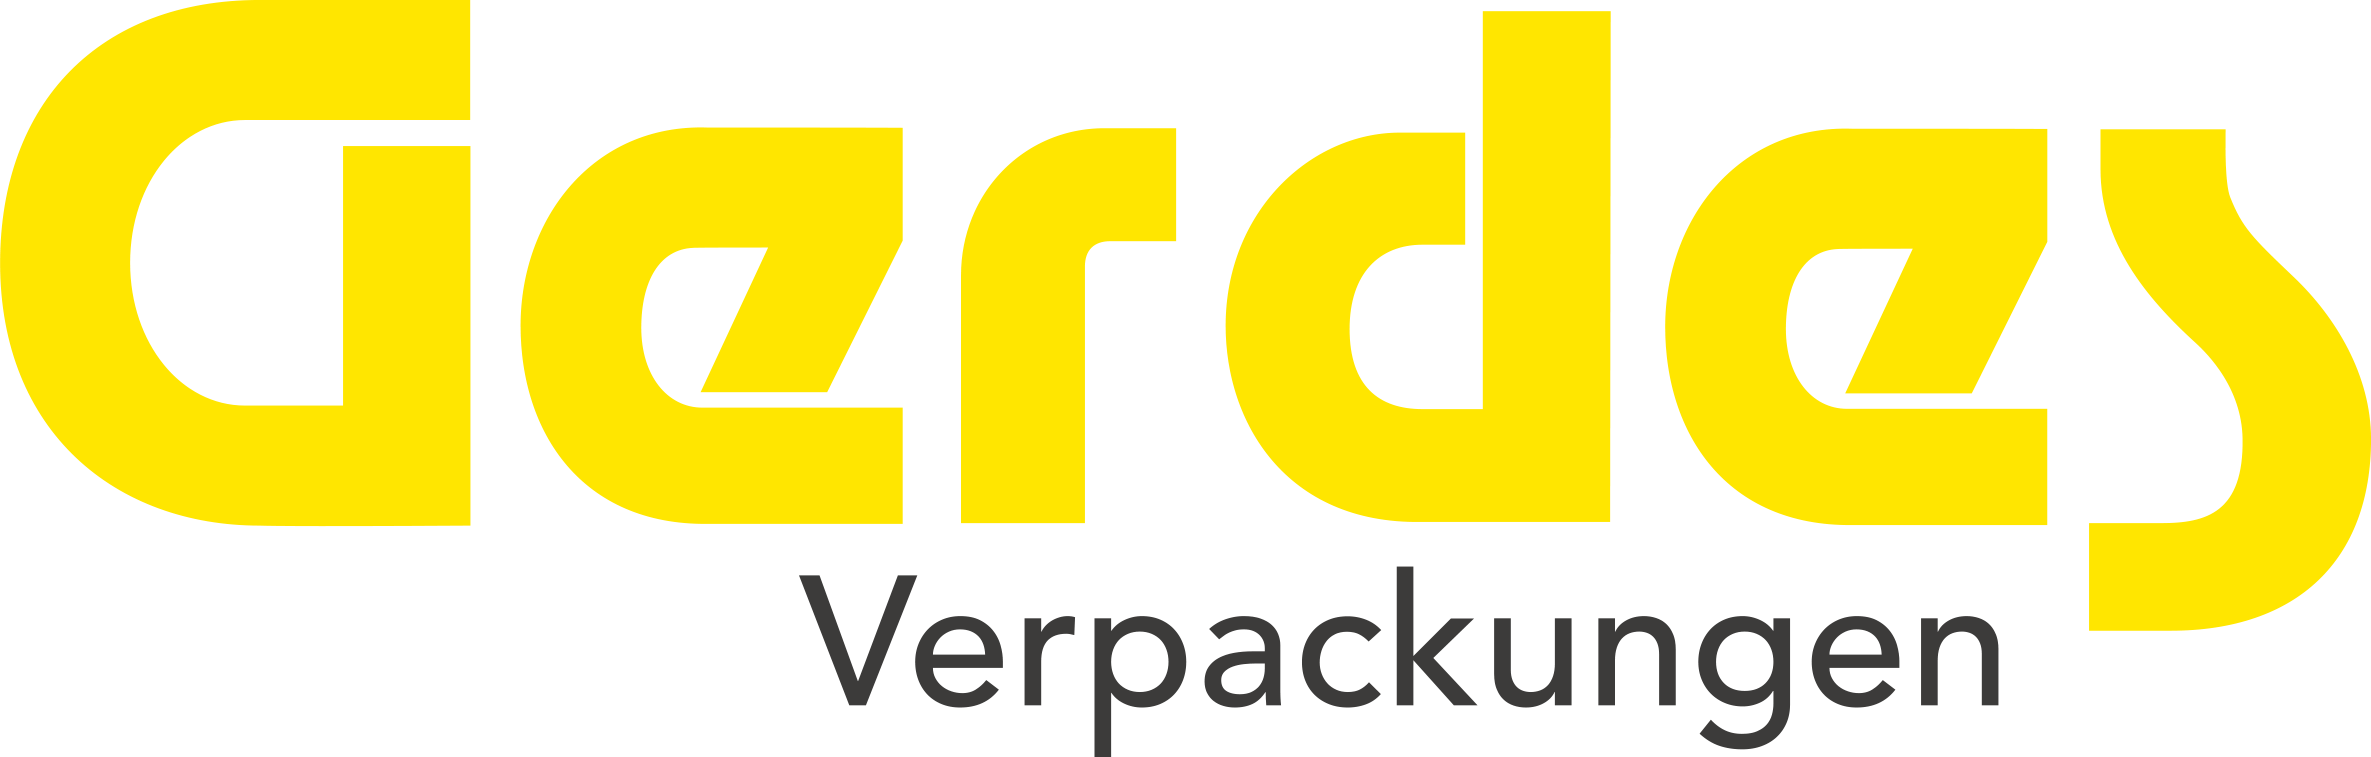 Gerdes Verpackungen GmbH